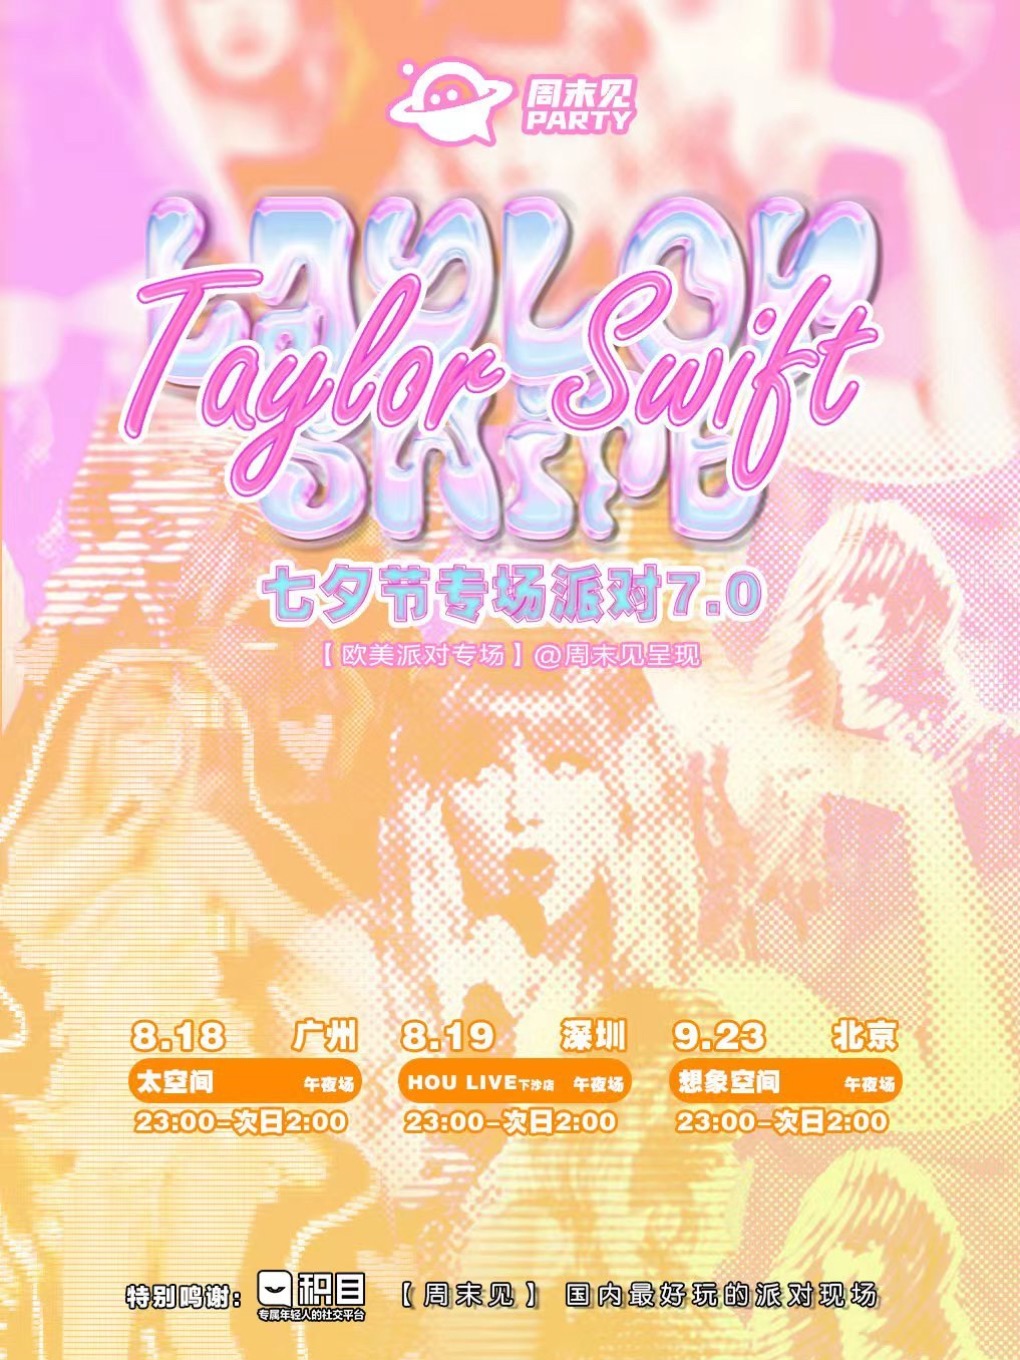 Taylor Swift 专场派对7.0 北京站【欧美派对系列】周末见呈现